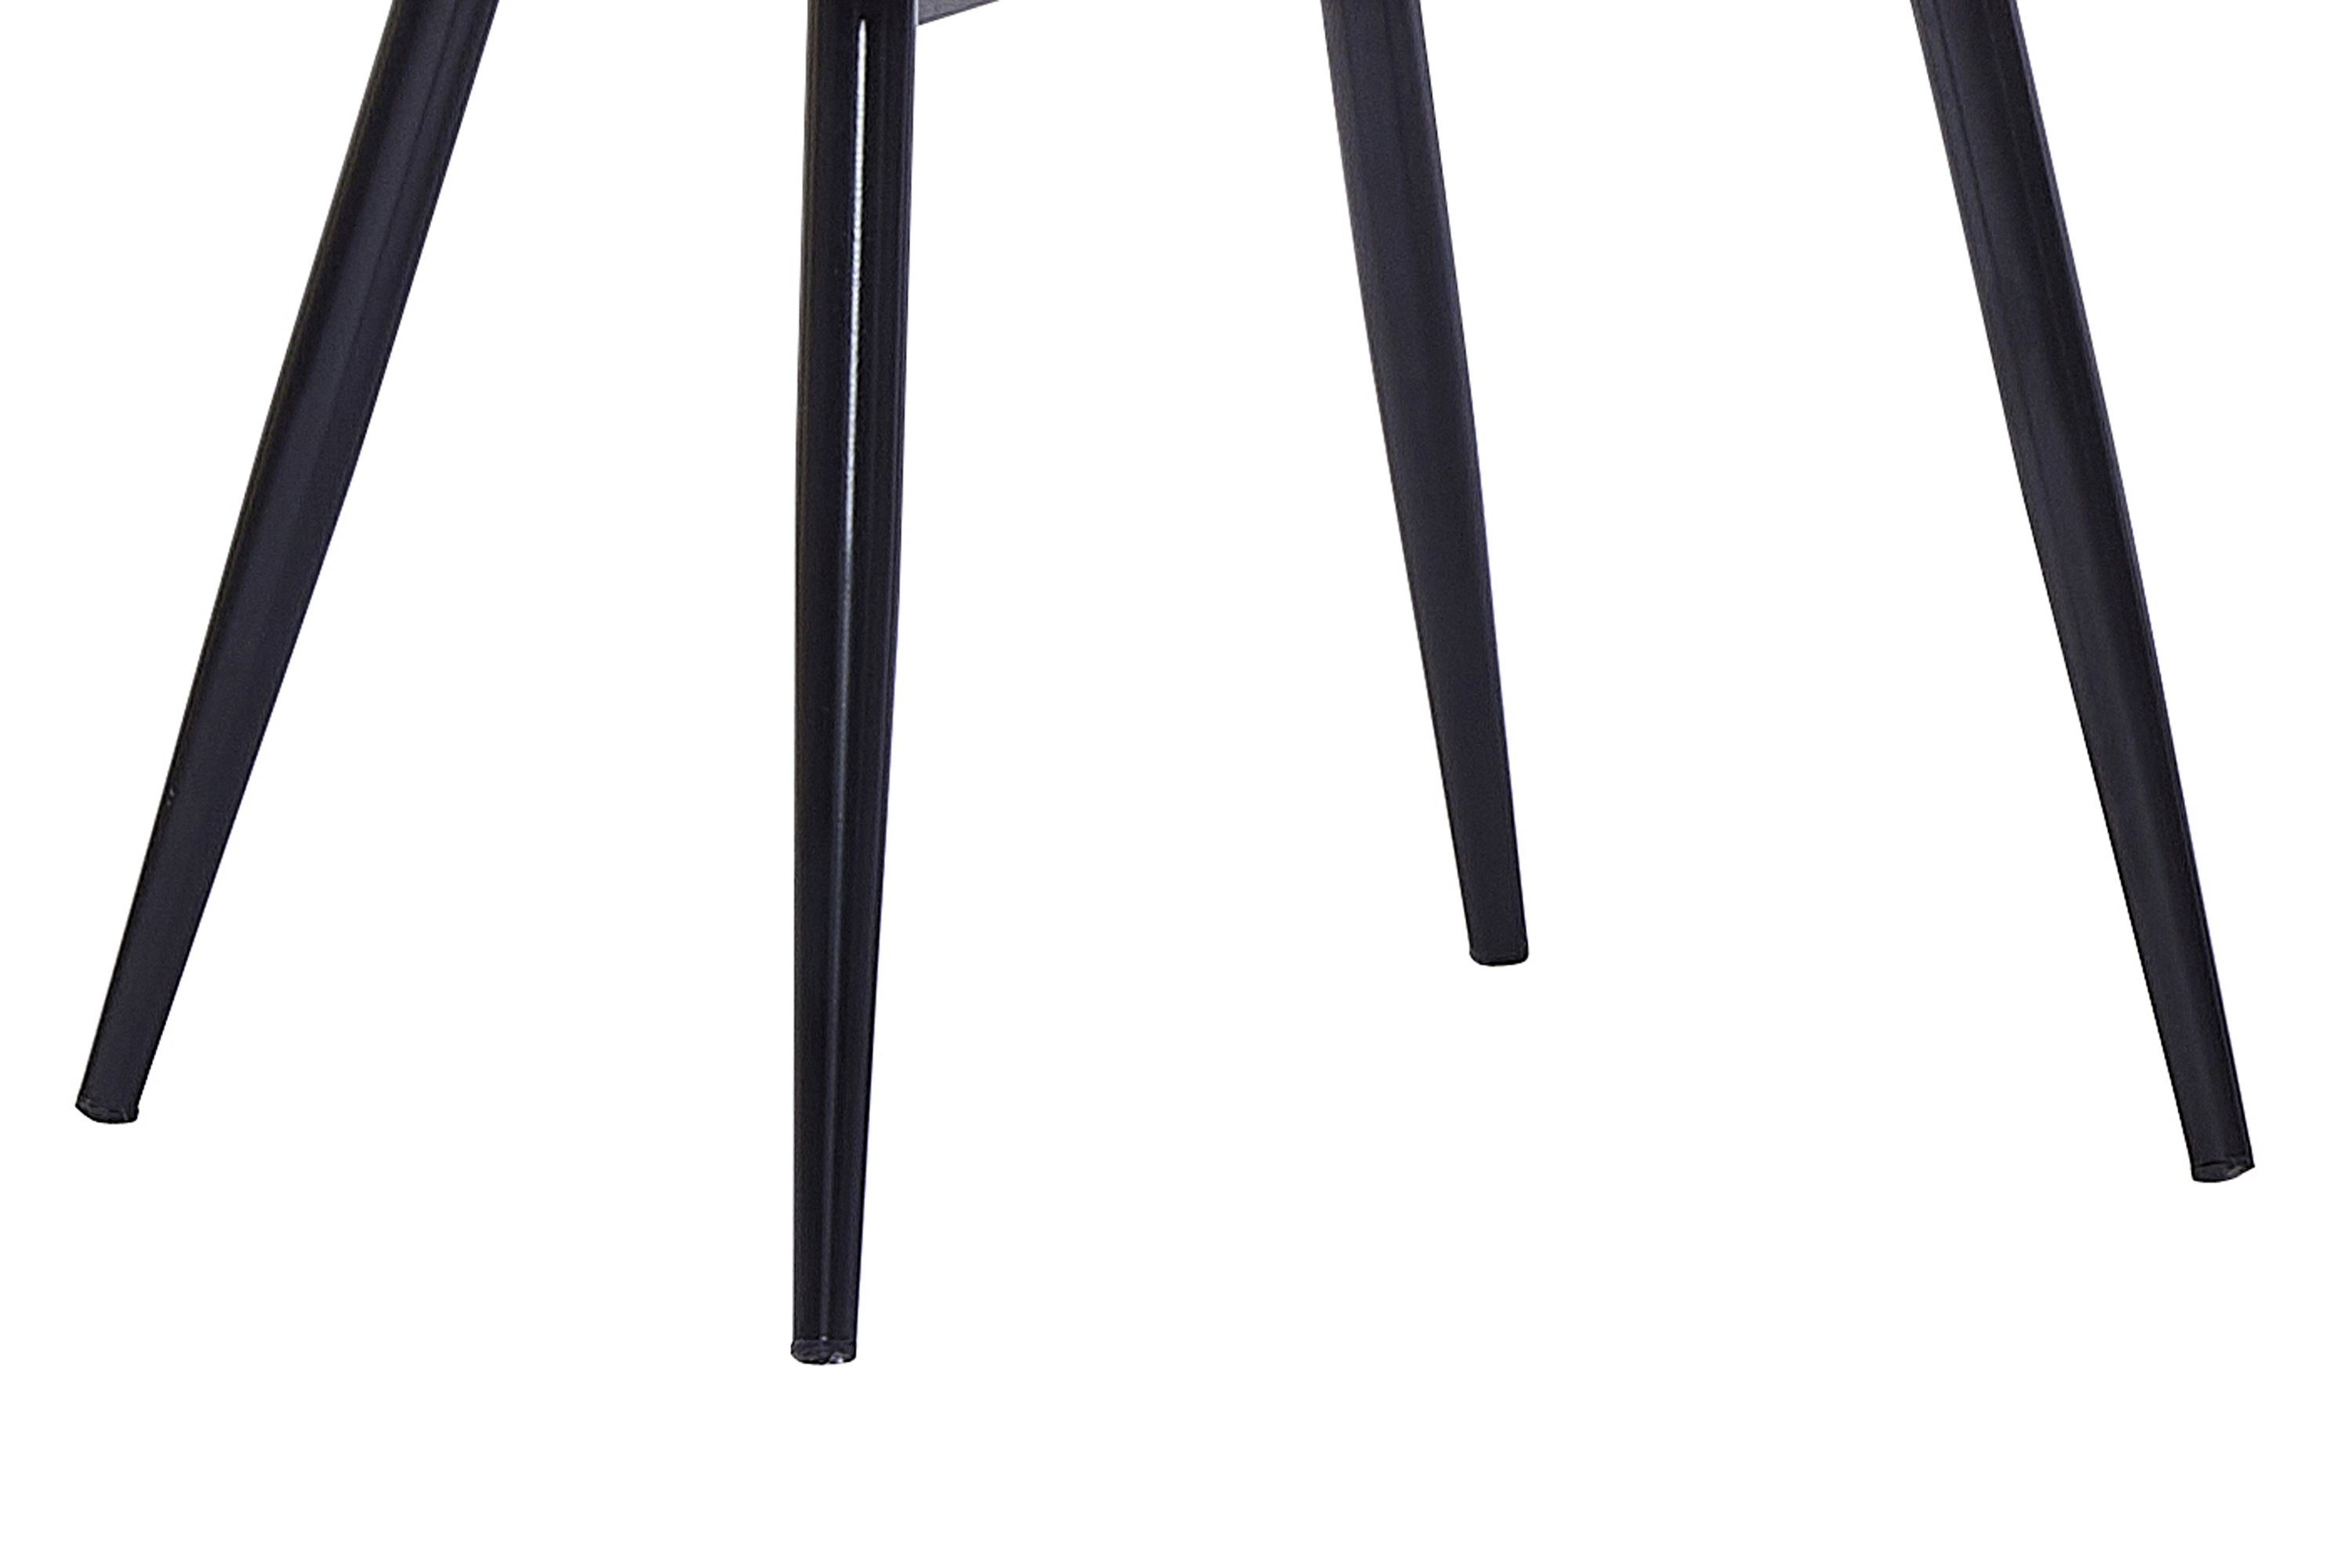 ergonomischer Stil Sitzhöhe hellbraun 43cm Sitzschale, mit Esszimmerstuhl Lasse, Junado® skandinavischer